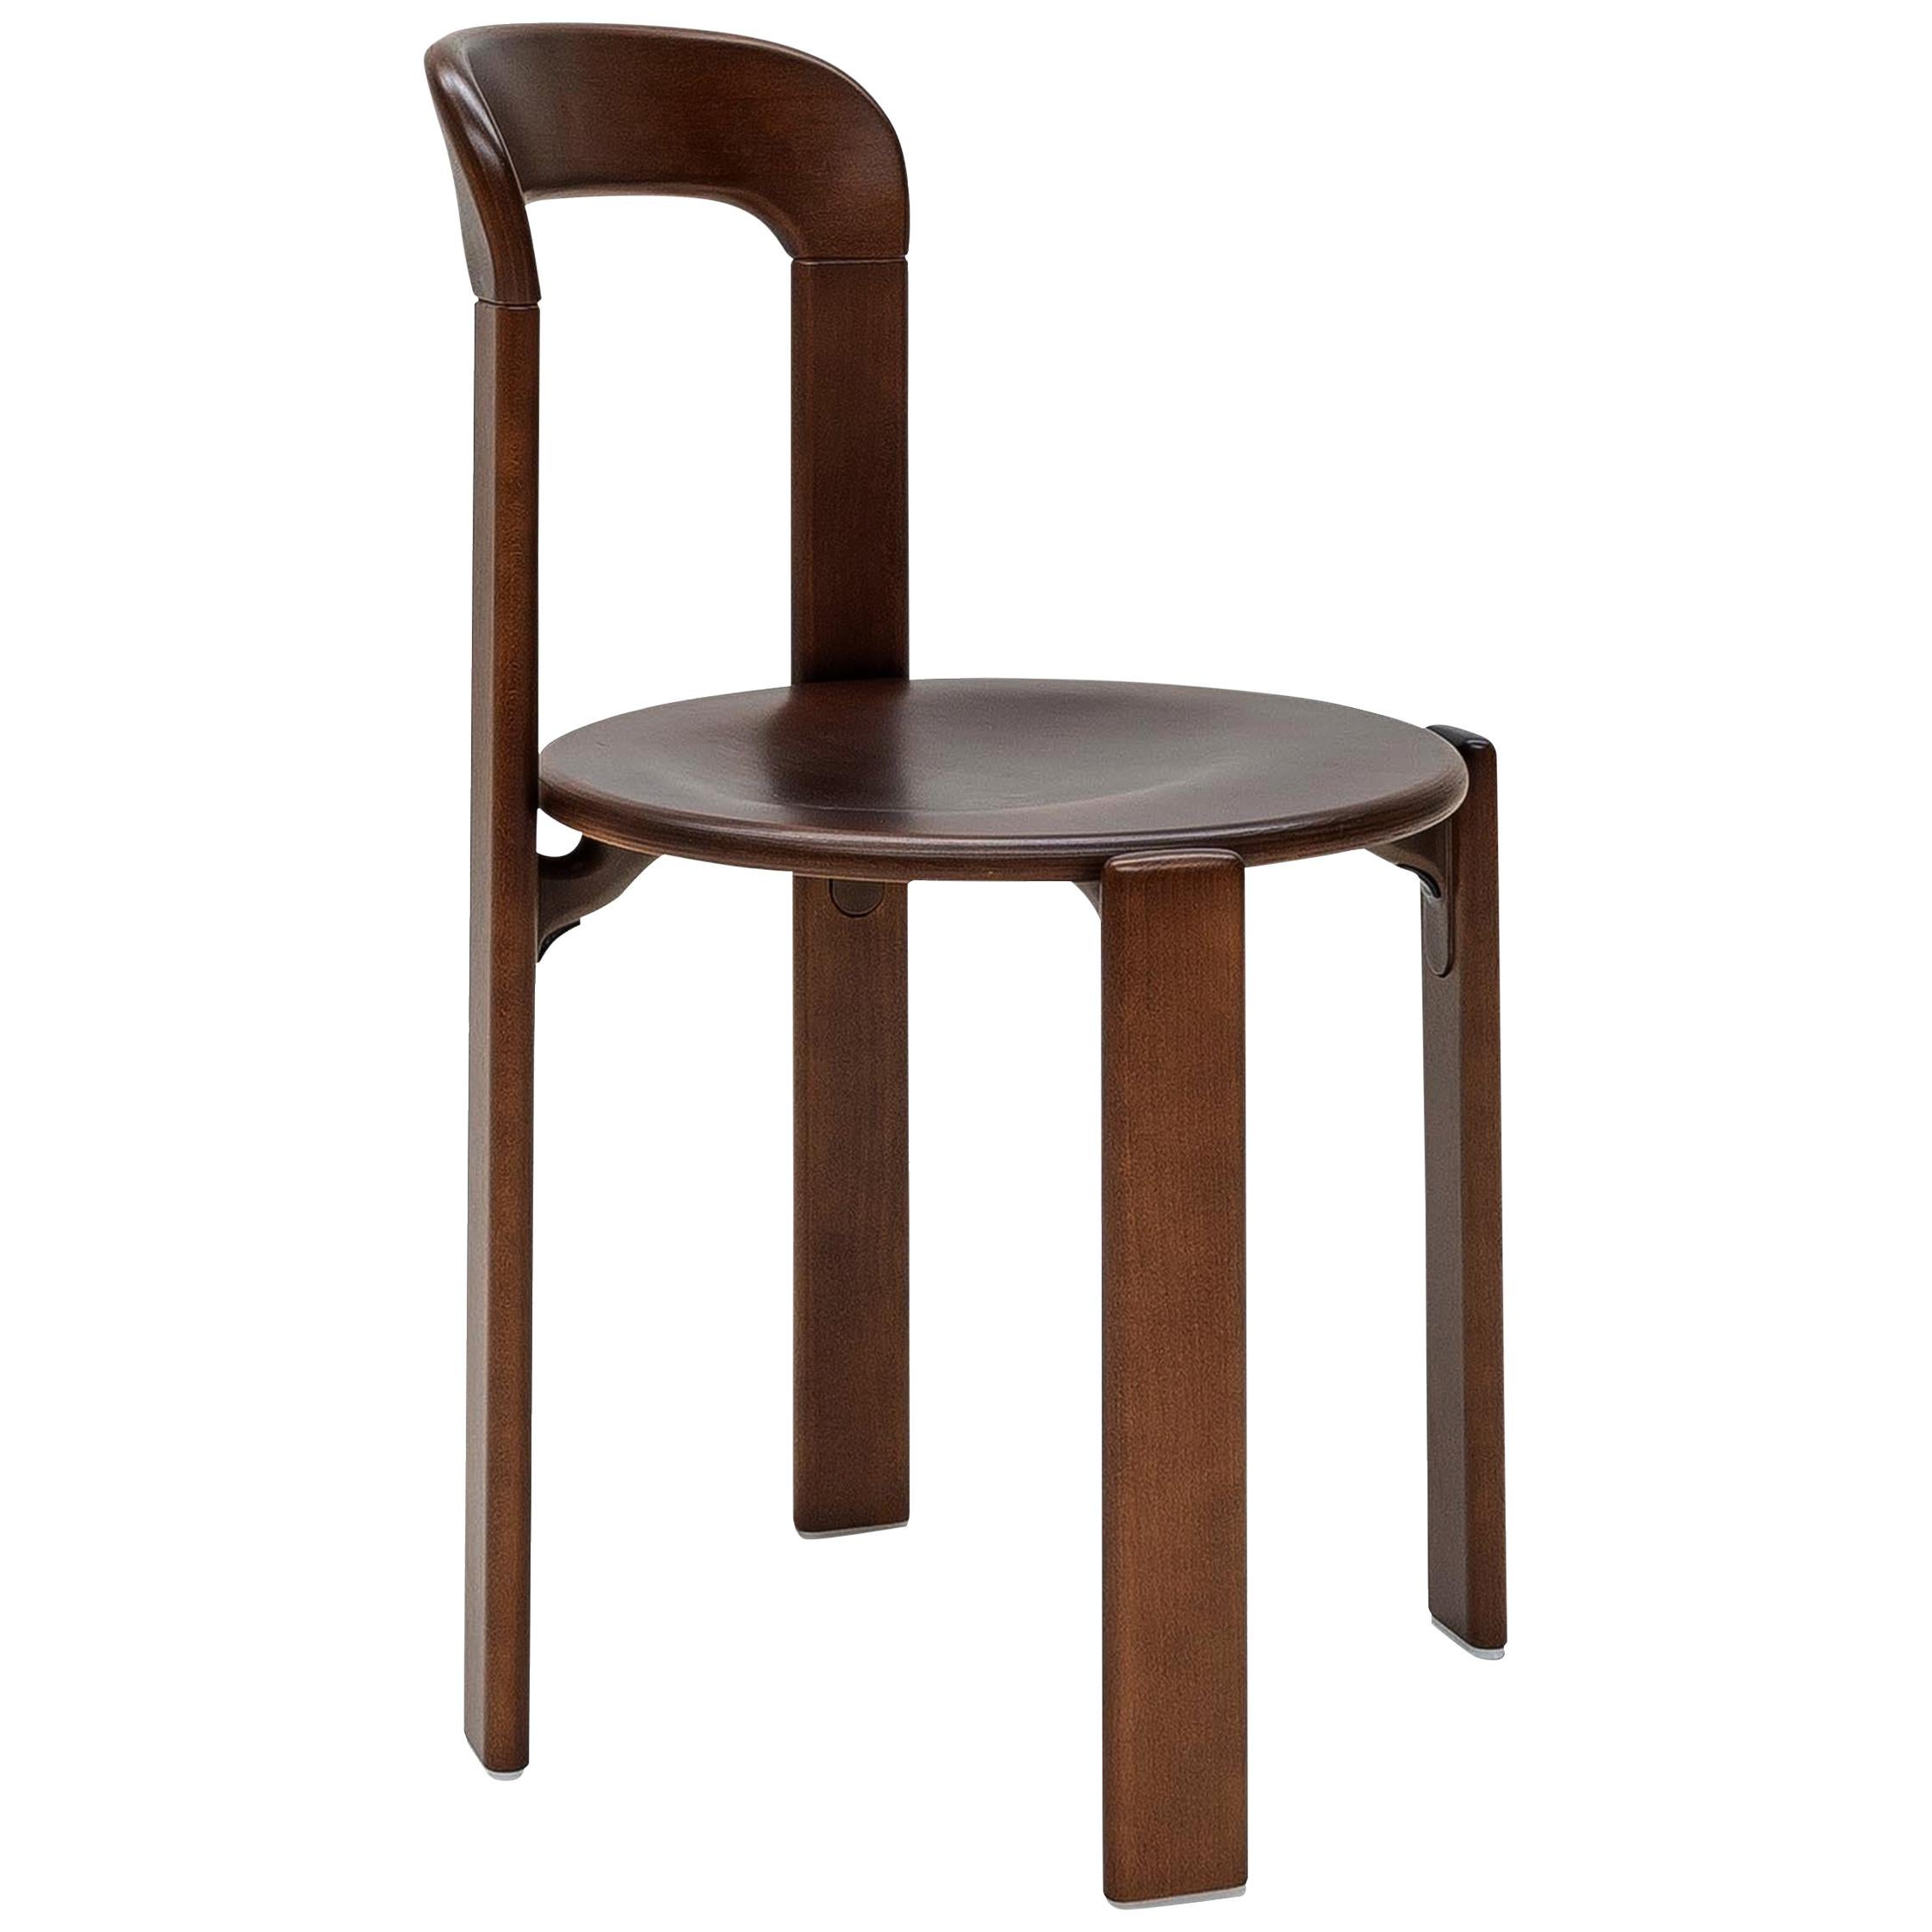 Mid-Century Modern, Rey Chair by Bruno Rey, Color Vintage Walnut, Design 1971